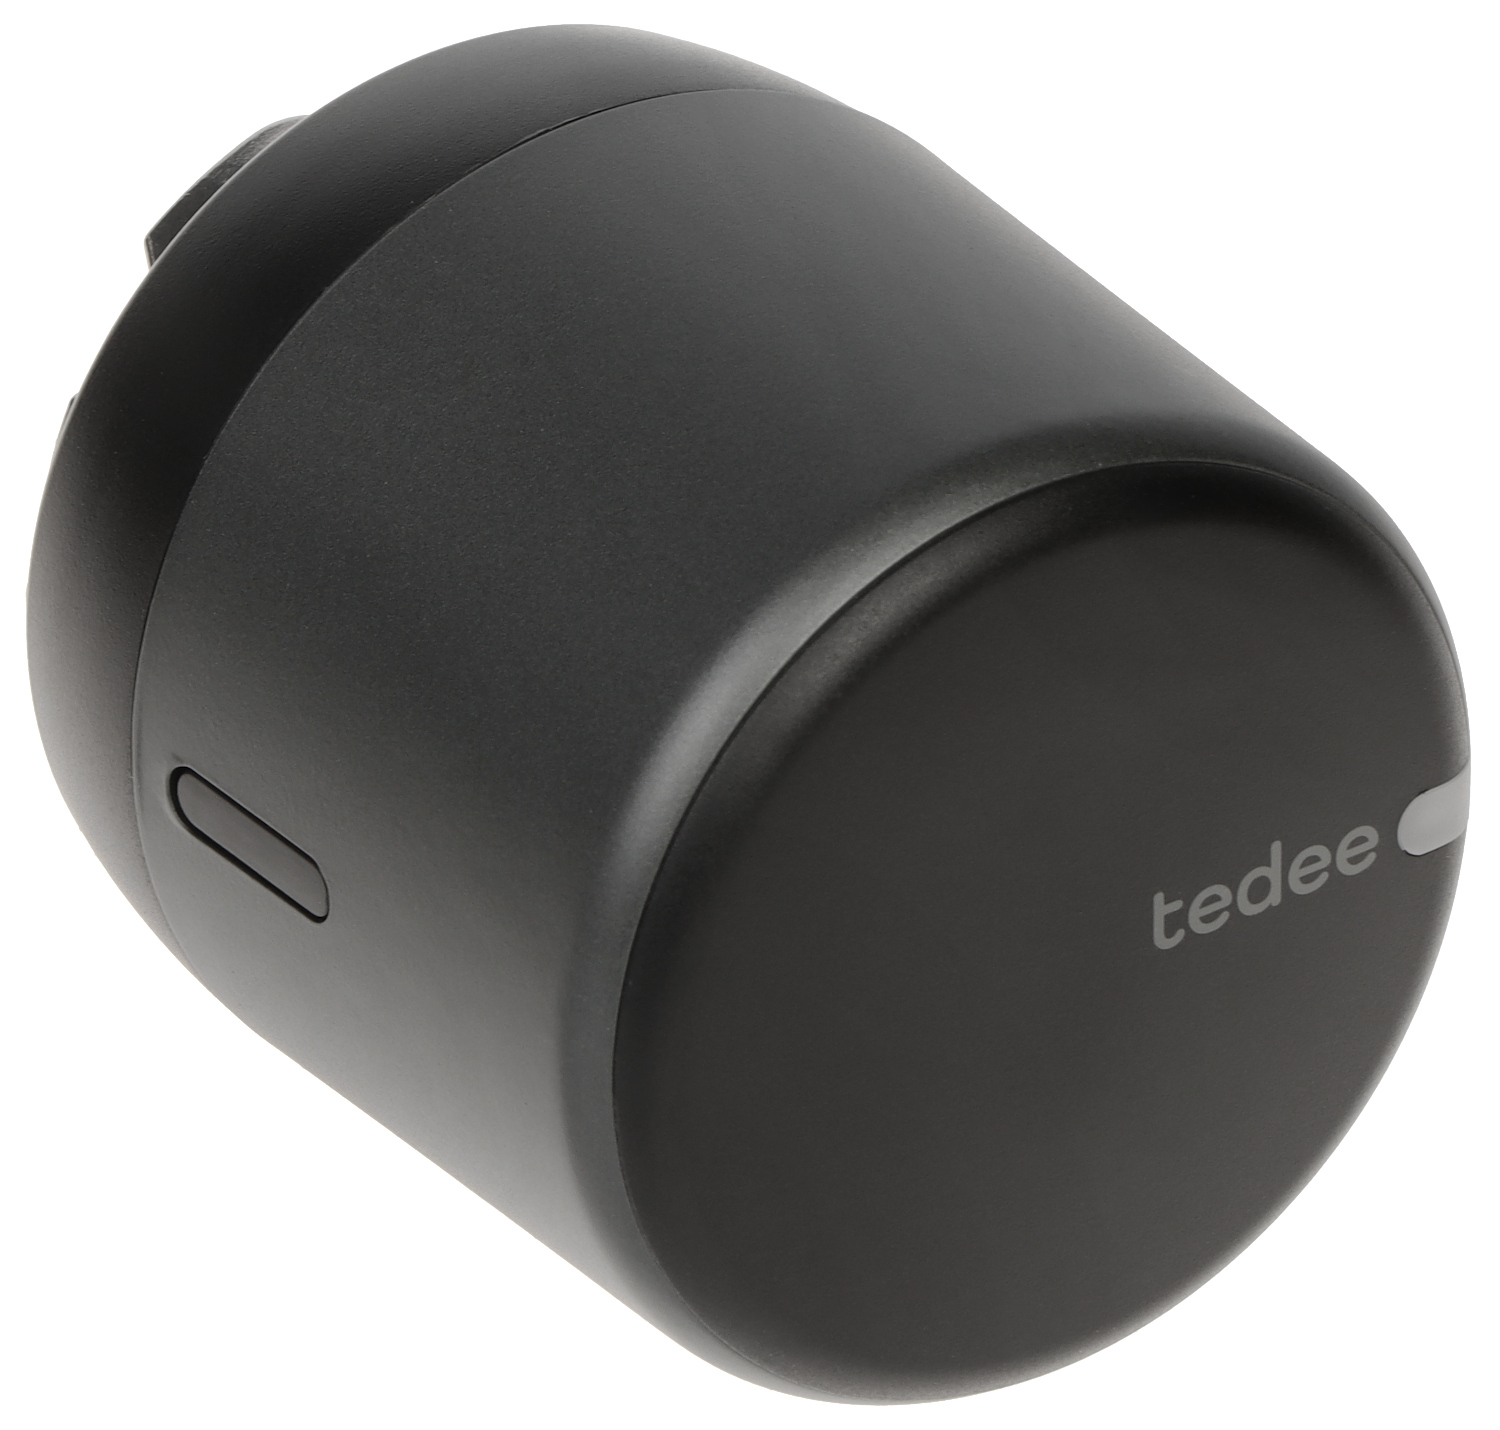 Tedee GO - Smart Lock